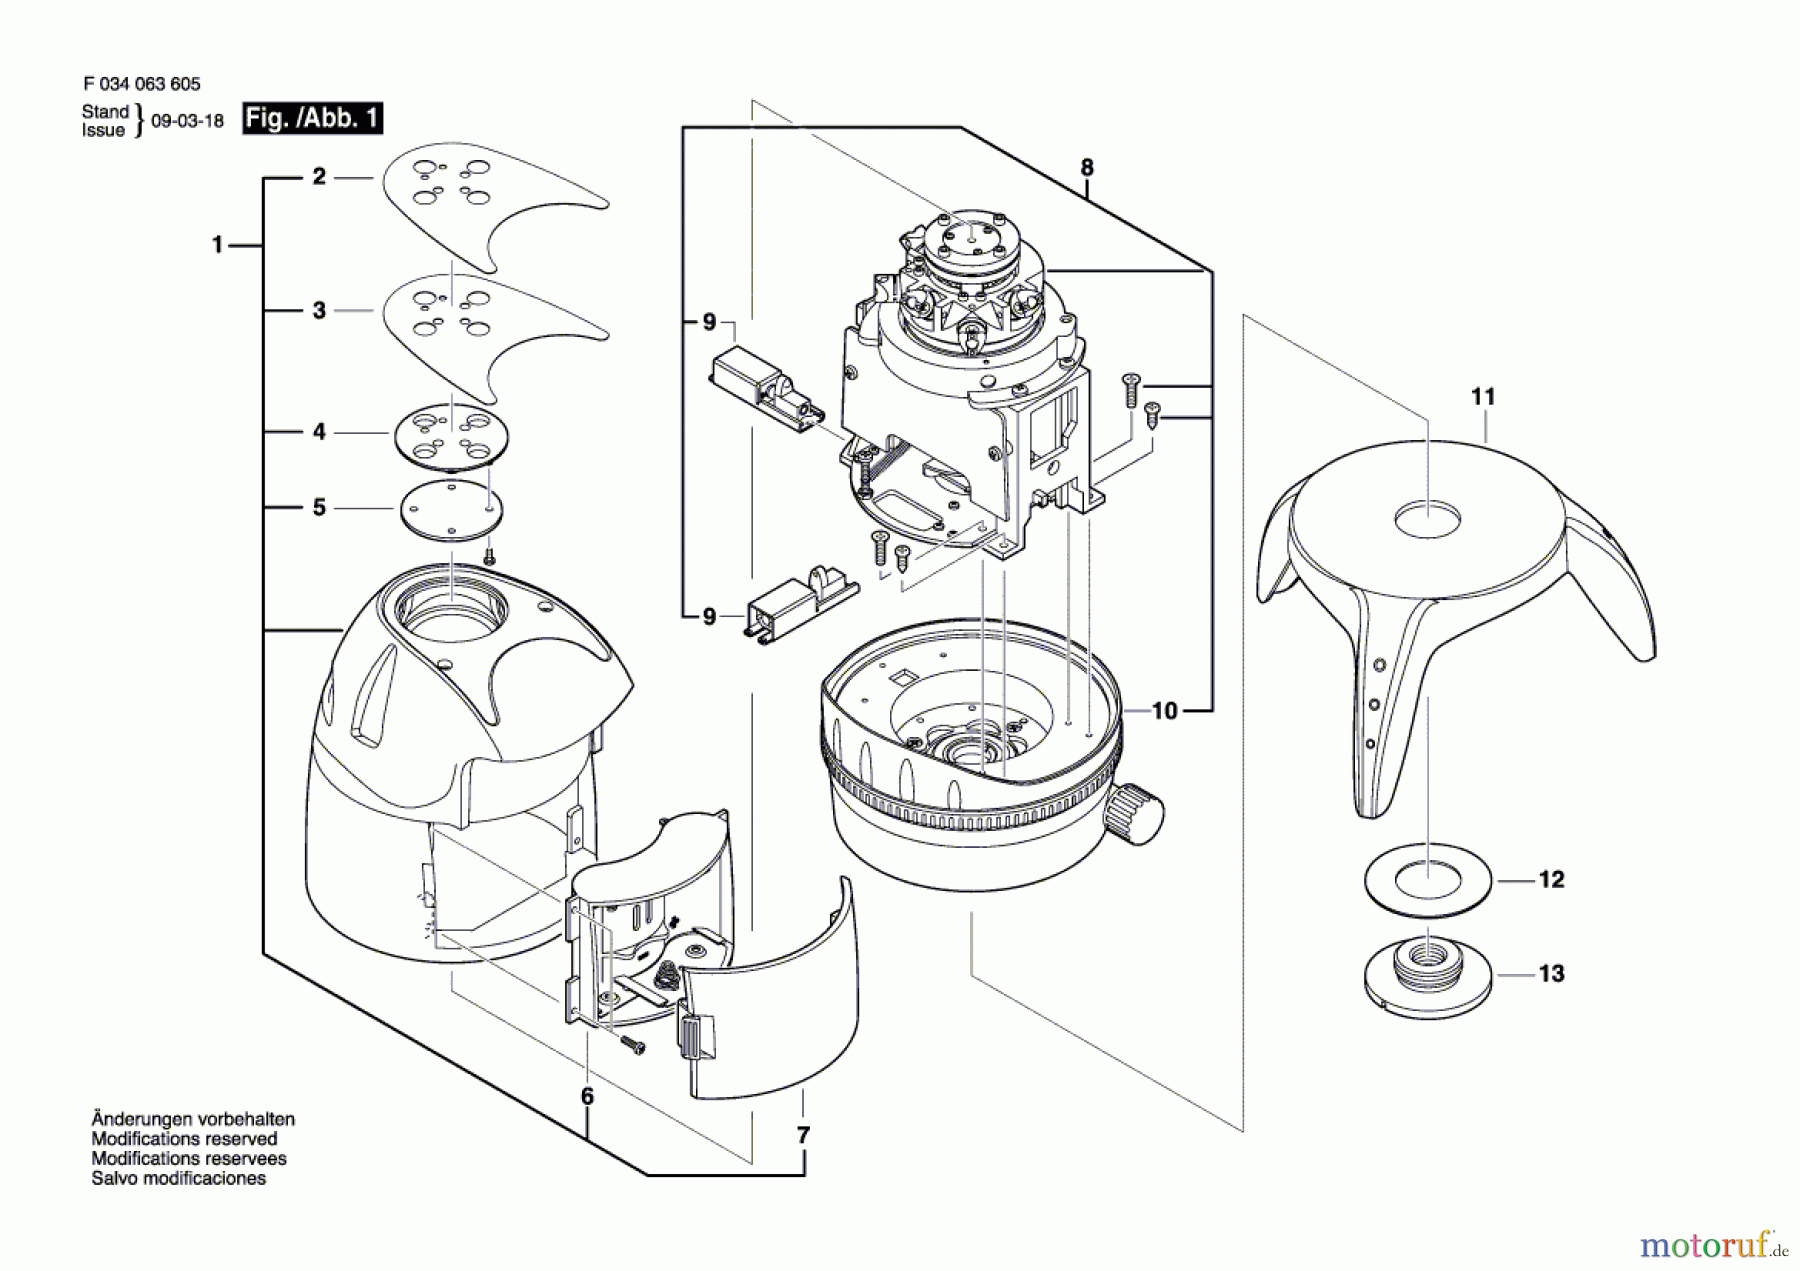  Bosch Werkzeug Laser 58-LM54 Seite 1